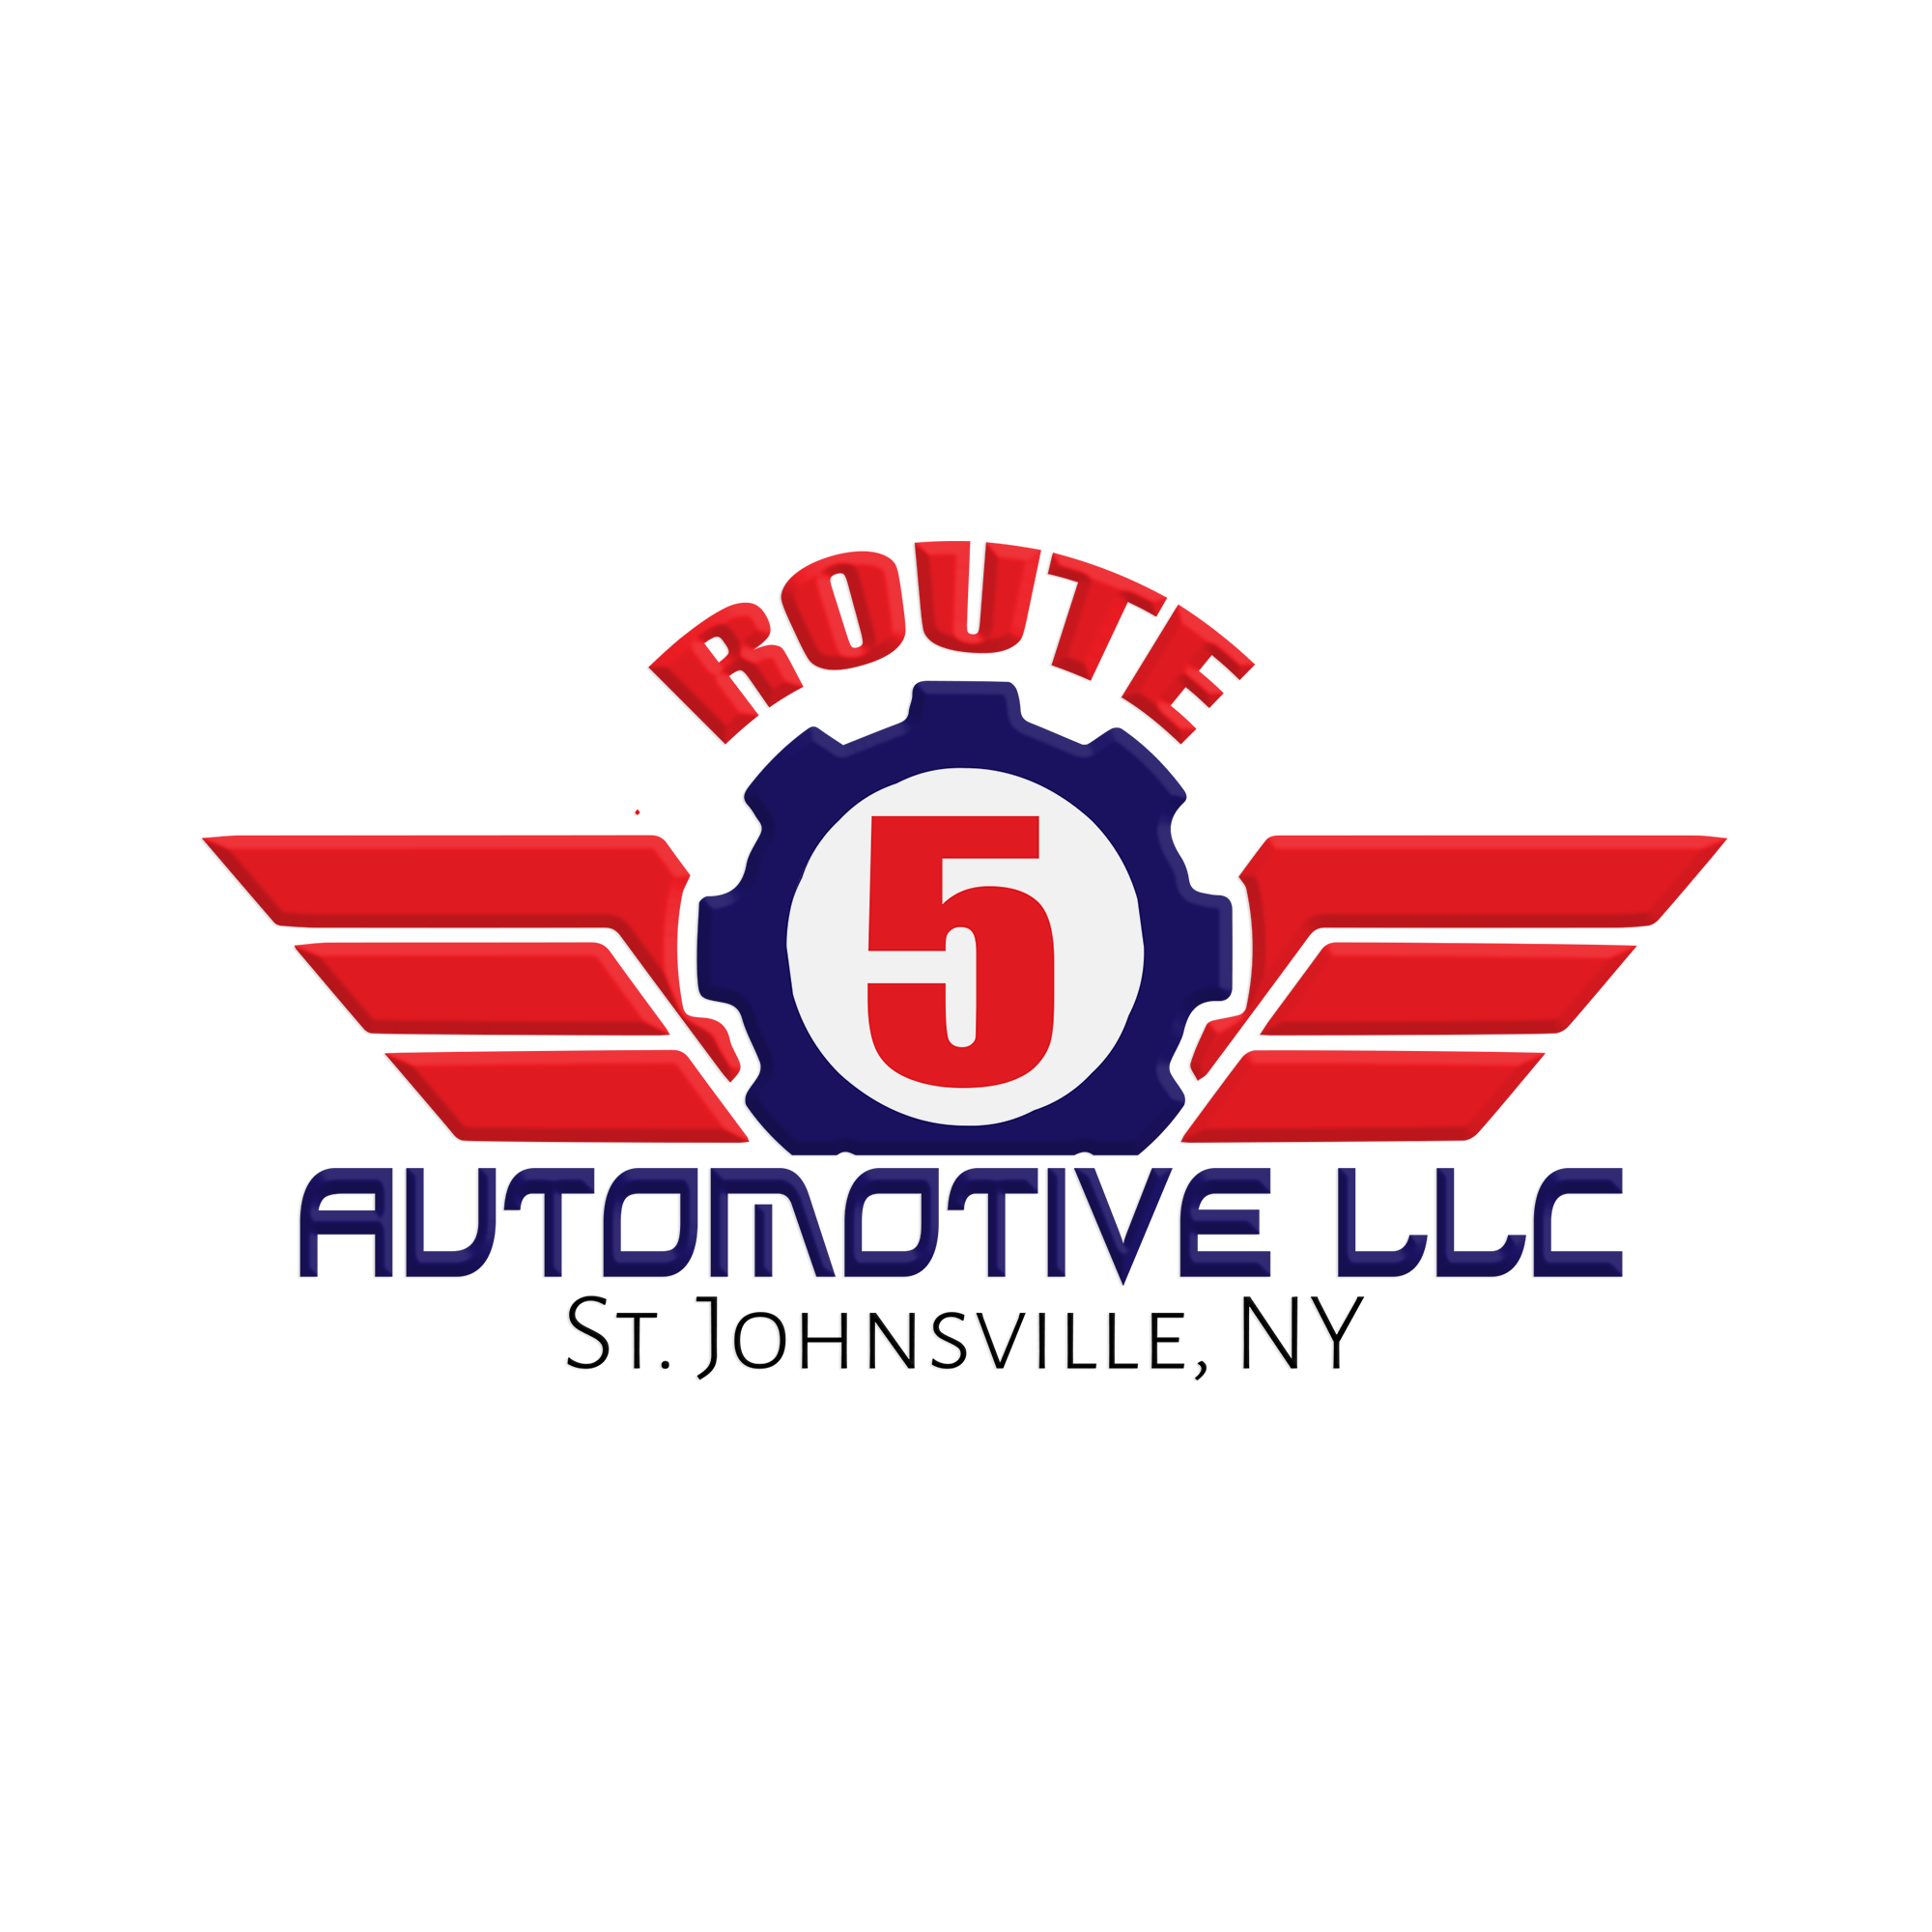 Route 5 Automotive LLC